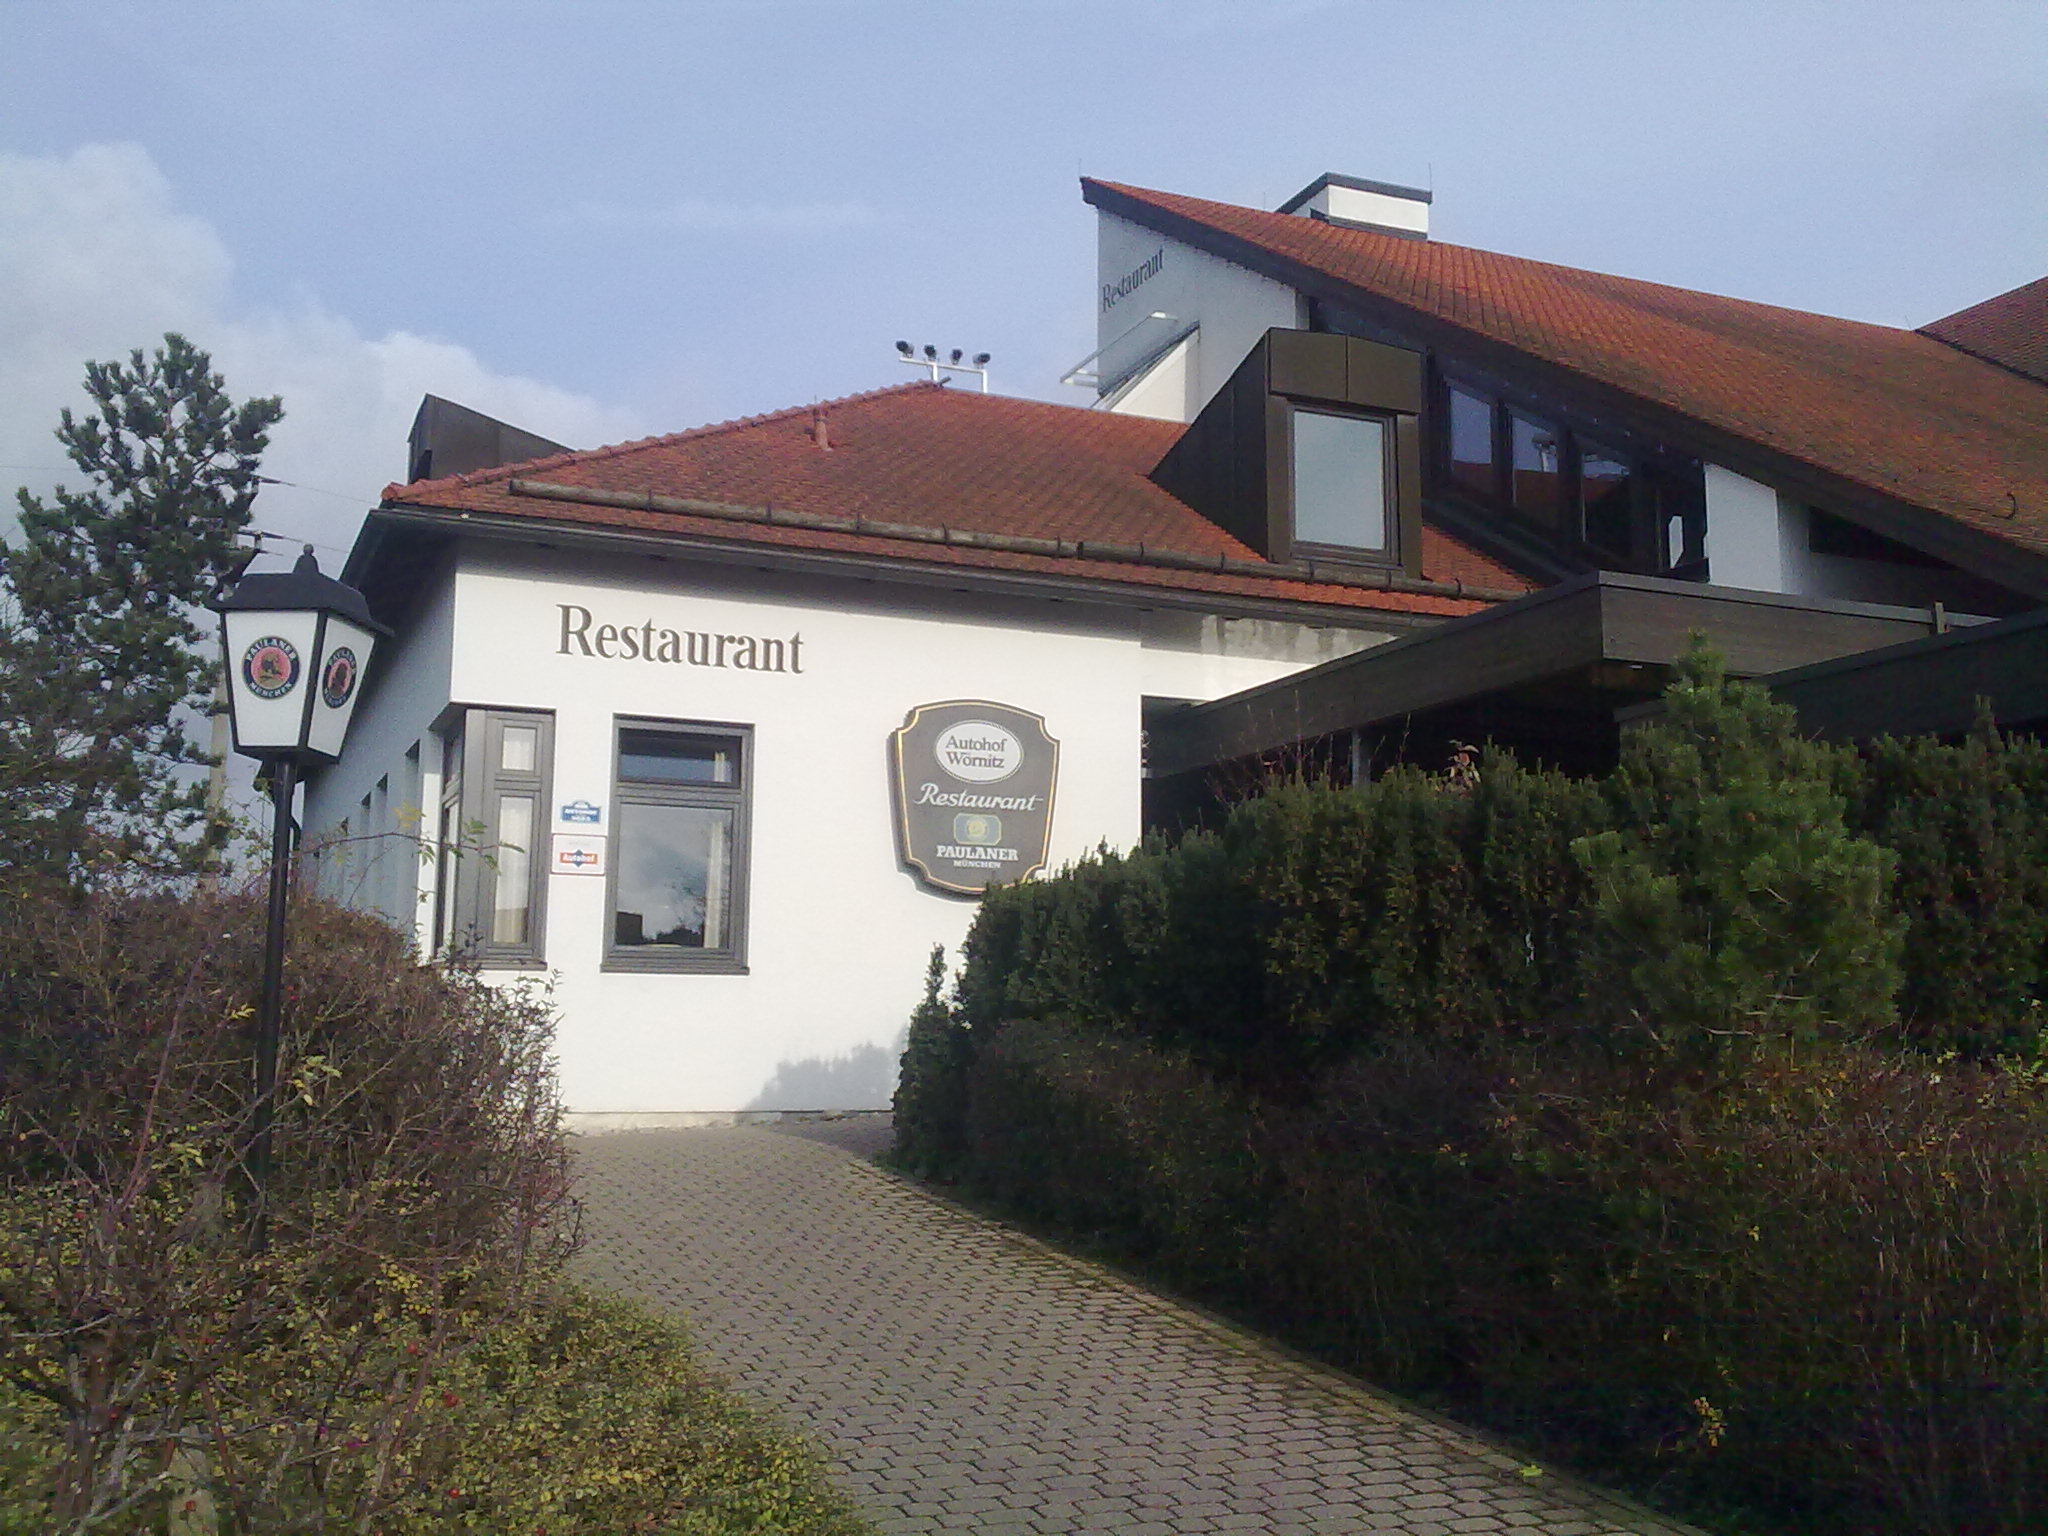 Restaurant Autohof Wörnitz